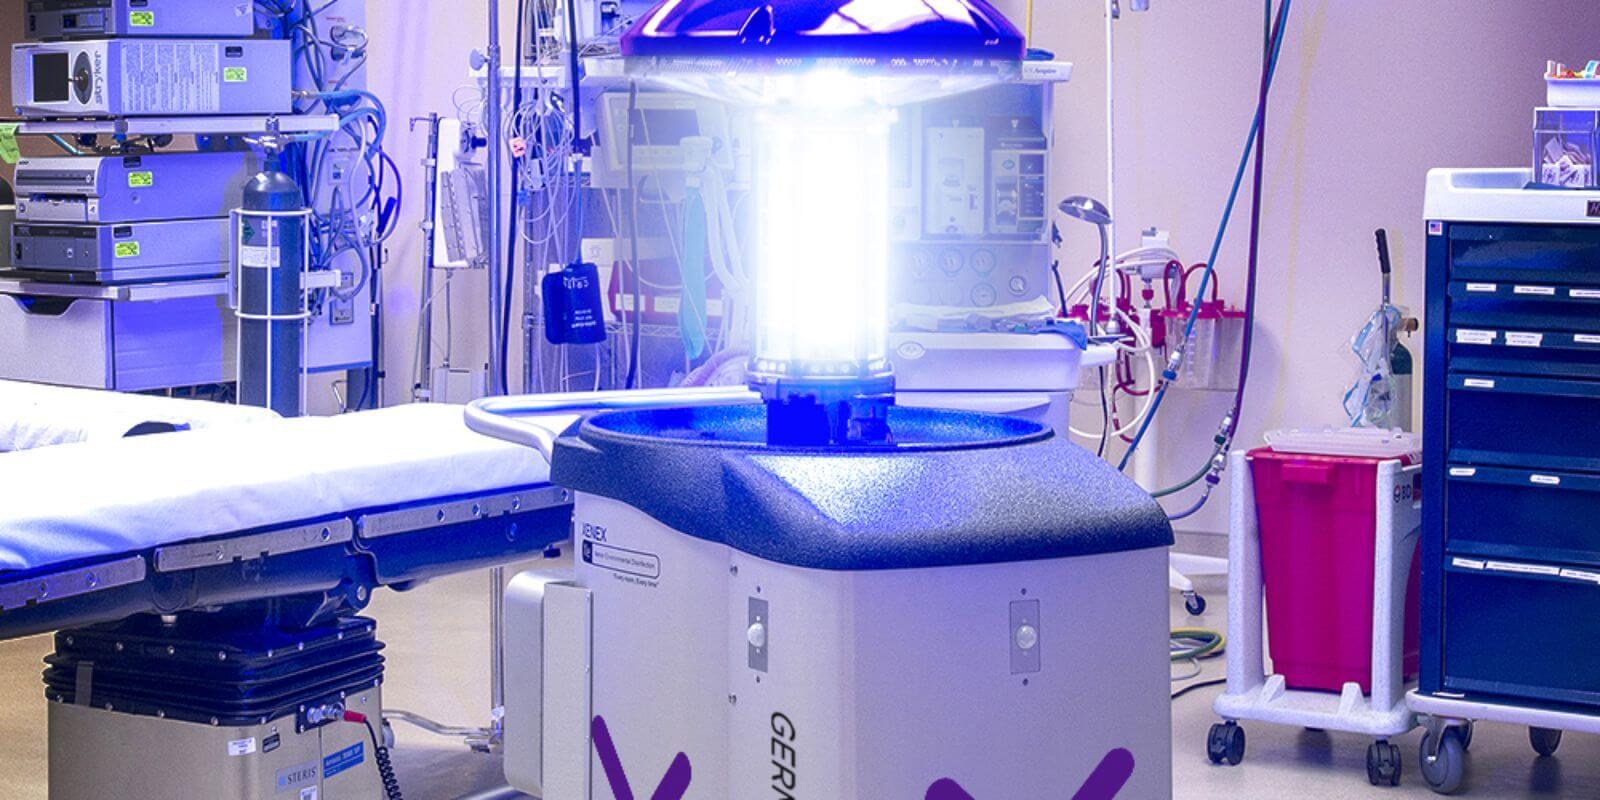 Desinfección de quirófanos con luz UV procedente de una lámpara de Xenón